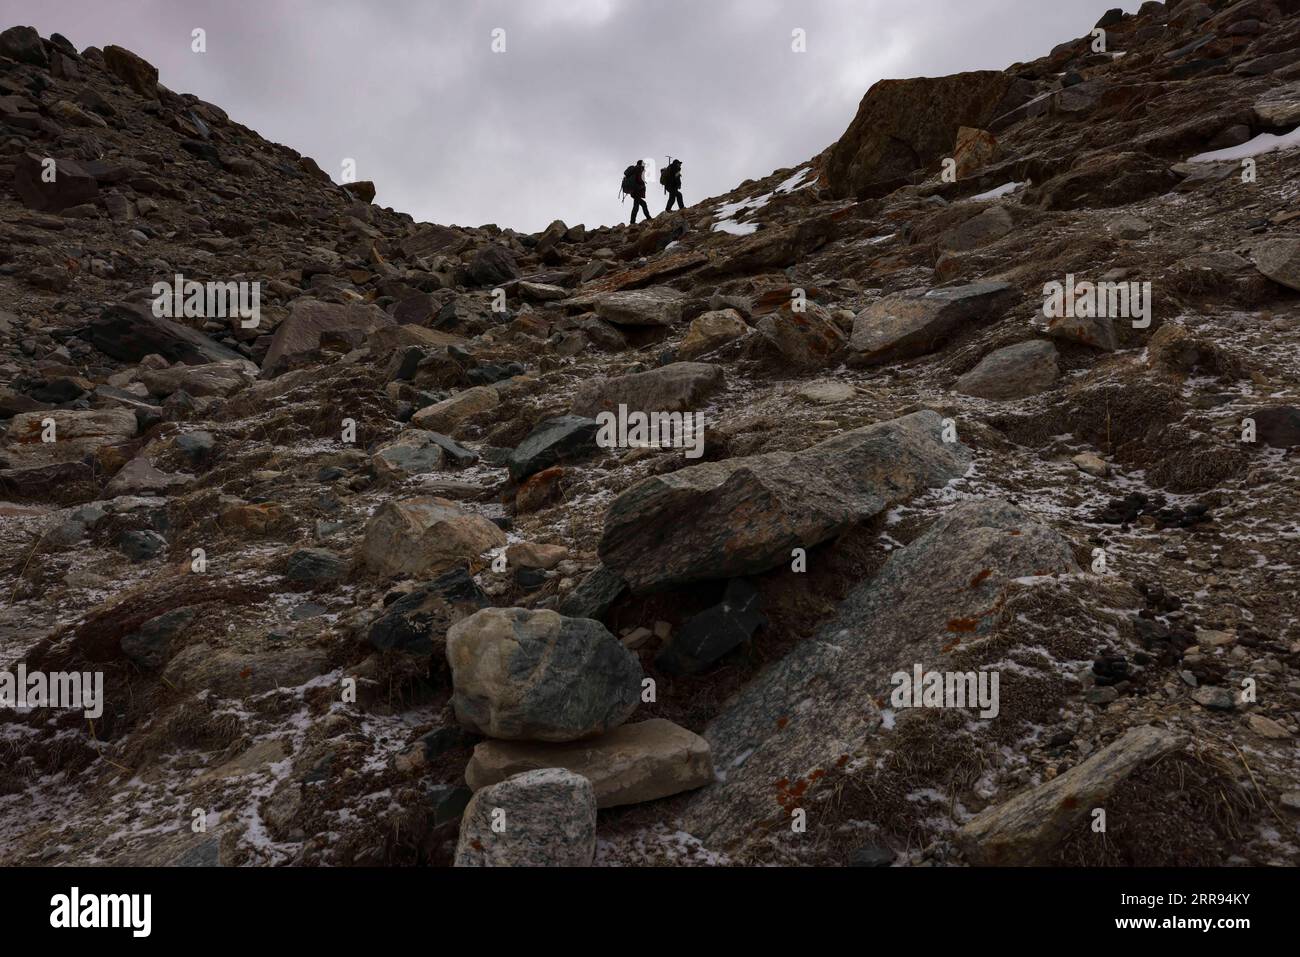 210528 -- URUMQI, 28 maggio 2021 -- Bikmirza Turdil R prende parte ad un addestramento mirato sulla Muztagh Ata nella regione autonoma di Xinjiang Uygur della Cina nord-occidentale, 16 maggio 2021. Bikmirza, un allevatore di 24 anni, nacque e crebbe ai piedi del Muztagh Ata, un picco con un'altitudine di oltre 7.500 metri, nella regione autonoma di Uygur dello Xinjiang Pamir in Cina. Ha iniziato a lavorare come guida aiutando gli scalatori a trasportare attrezzature e provviste all'età di 18 anni. Scalare il Muztagh Ata, un simbolo di coraggio, è anche considerato come la cerimonia di raggiungimento della maggiore età per i giovani locali. A Subax Villag Foto Stock